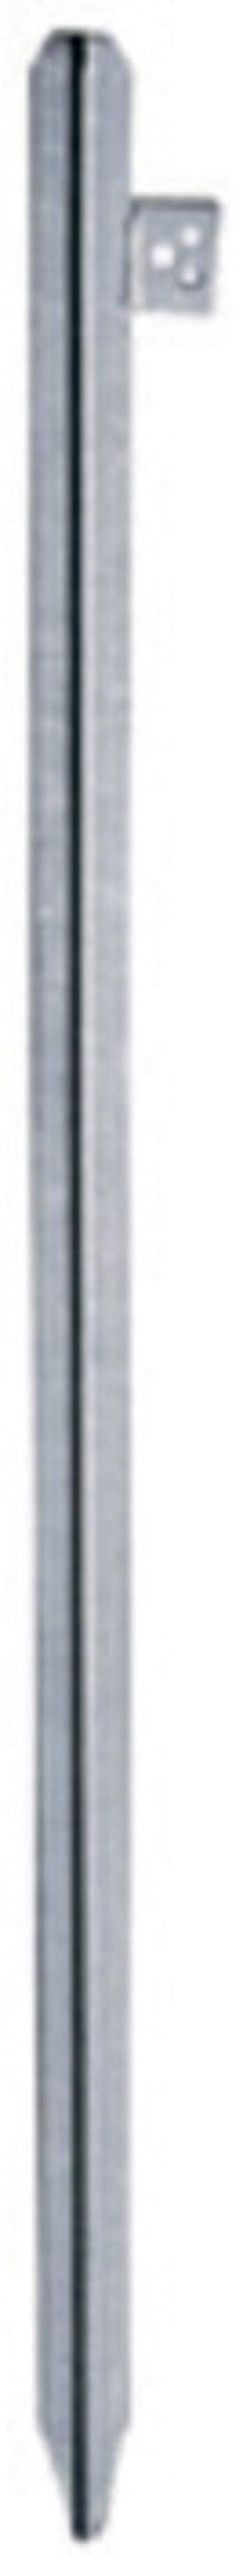 Uzemňovacia tyč 1,5 m  10510 AS Schwabe Množstvo: 1 ks